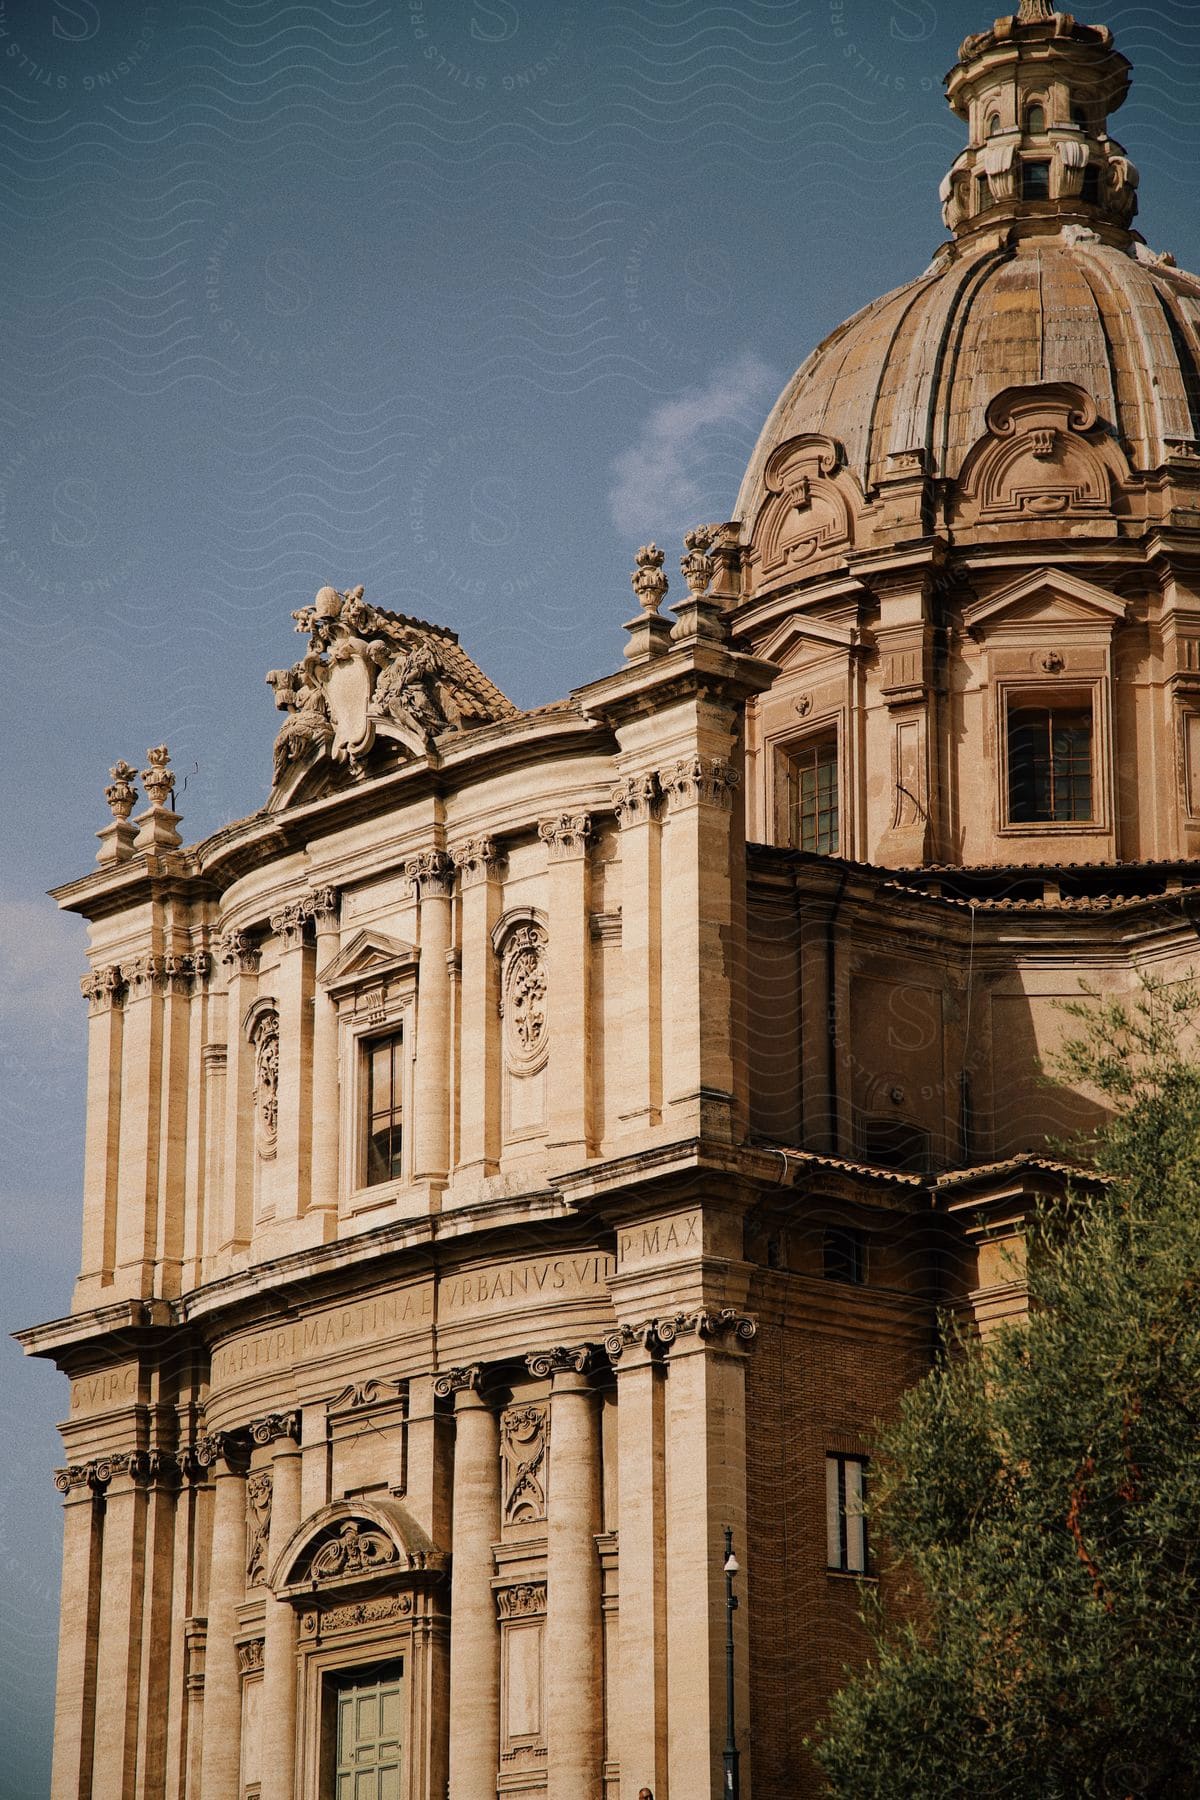 Detailed architecture of Santa Maria di Loreto church in Rome